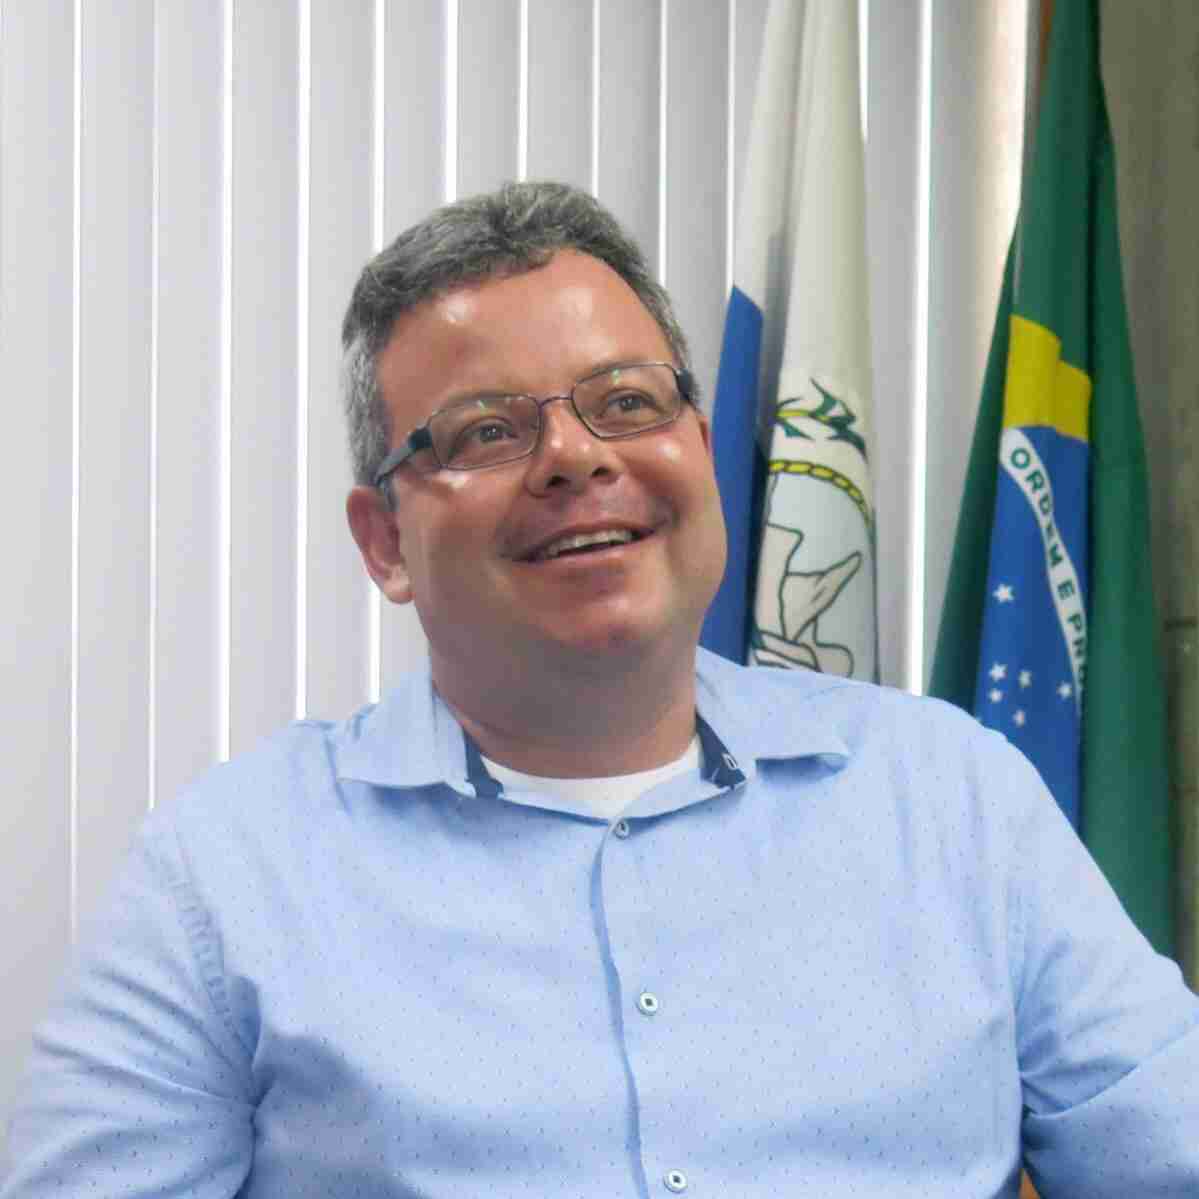 Marco Vieira (Subsecretário de Tecnologia da Informação e Comunicação da Secretaria de Estado da Casa Civil e Governança do Estado do Rio de Janeiro)